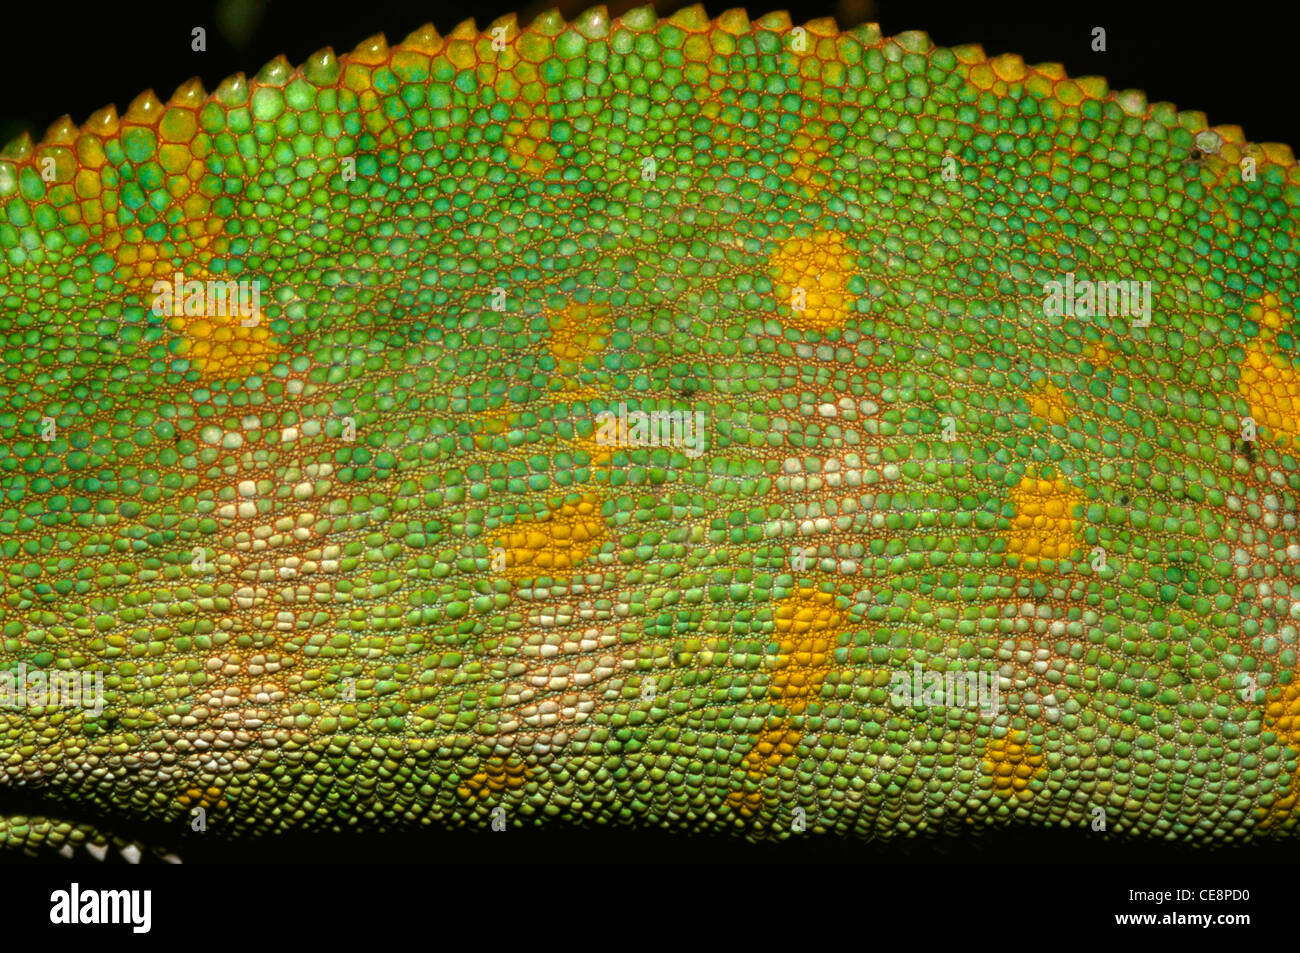 IKA 80345 : Chameleon close up of skin Chameleo Zeylanicus Stock Photo